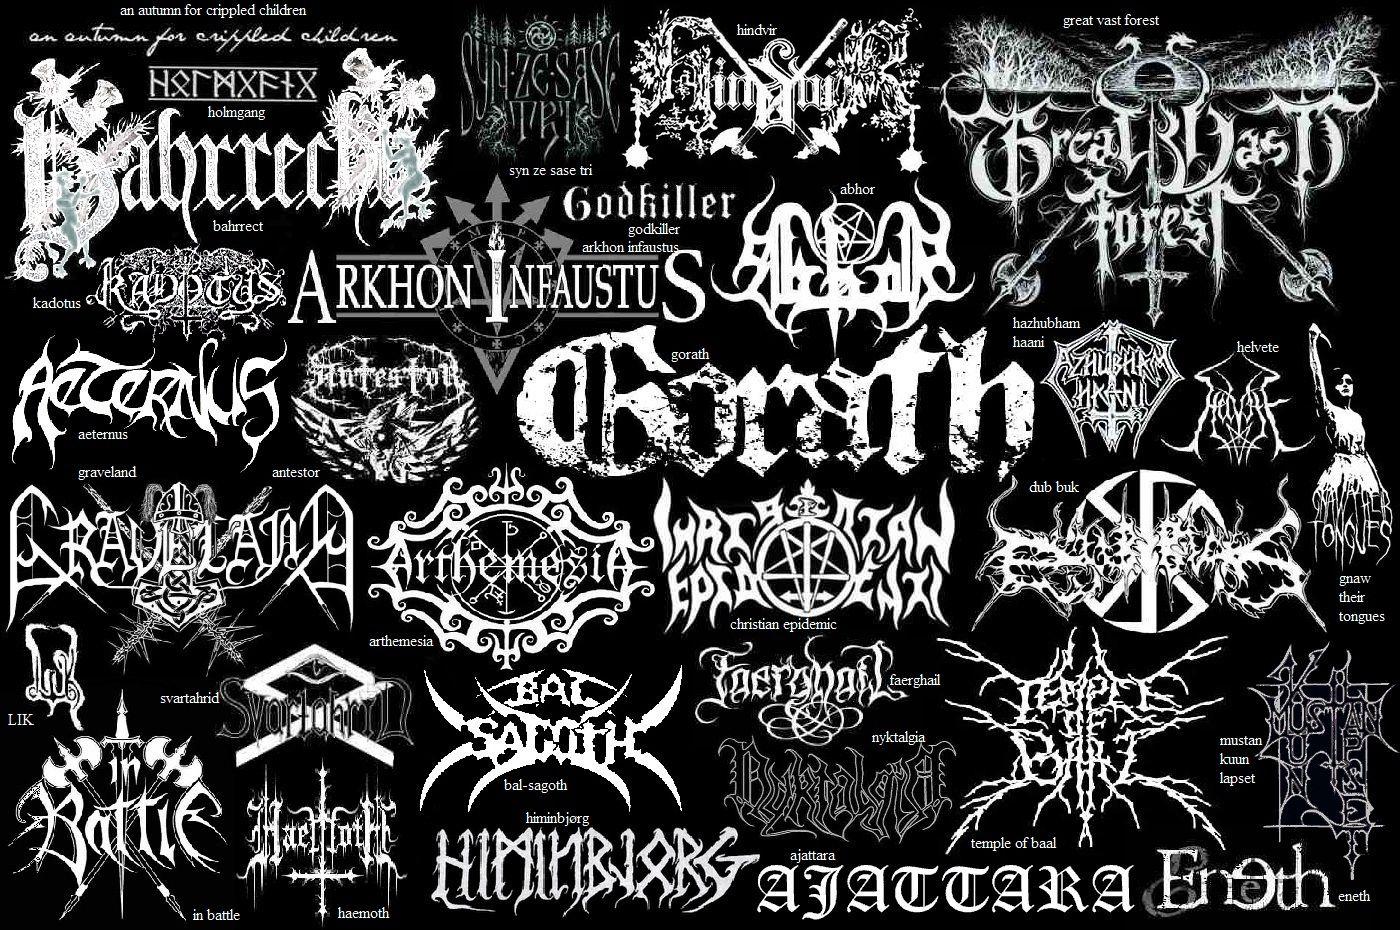 Best black metal